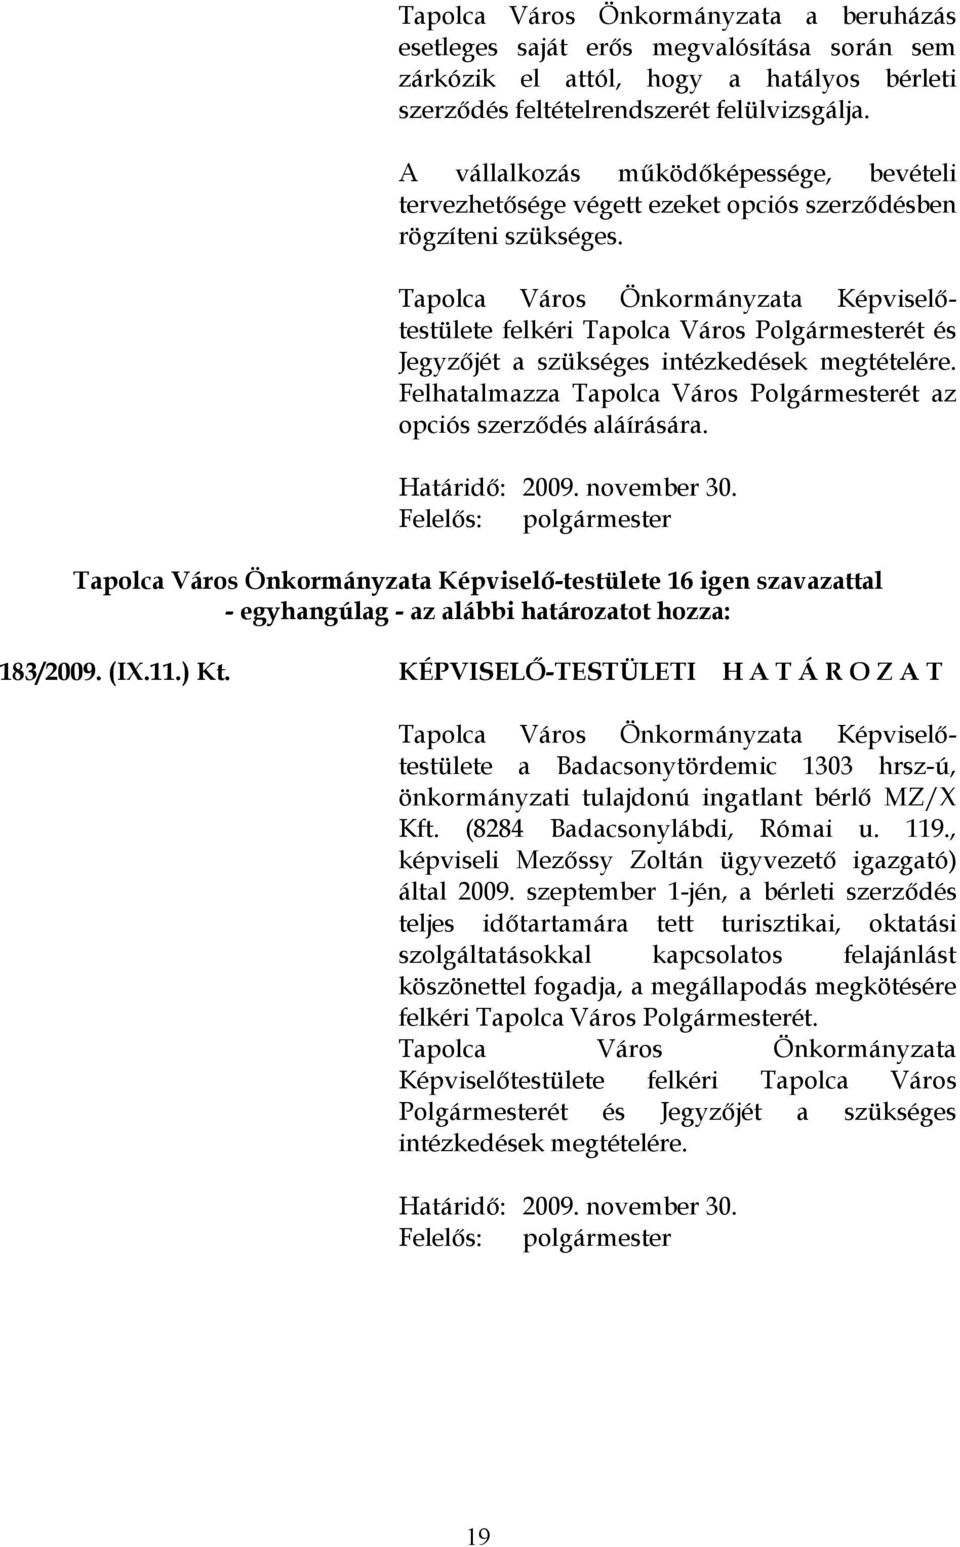 Felhatalmazza Tapolca Város Polgármesterét az opciós szerződés aláírására. Határidő: 2009. november 30. Felelős: polgármester - egyhangúlag - az alábbi határozatot hozza: 183/2009. (IX.11.) Kt.